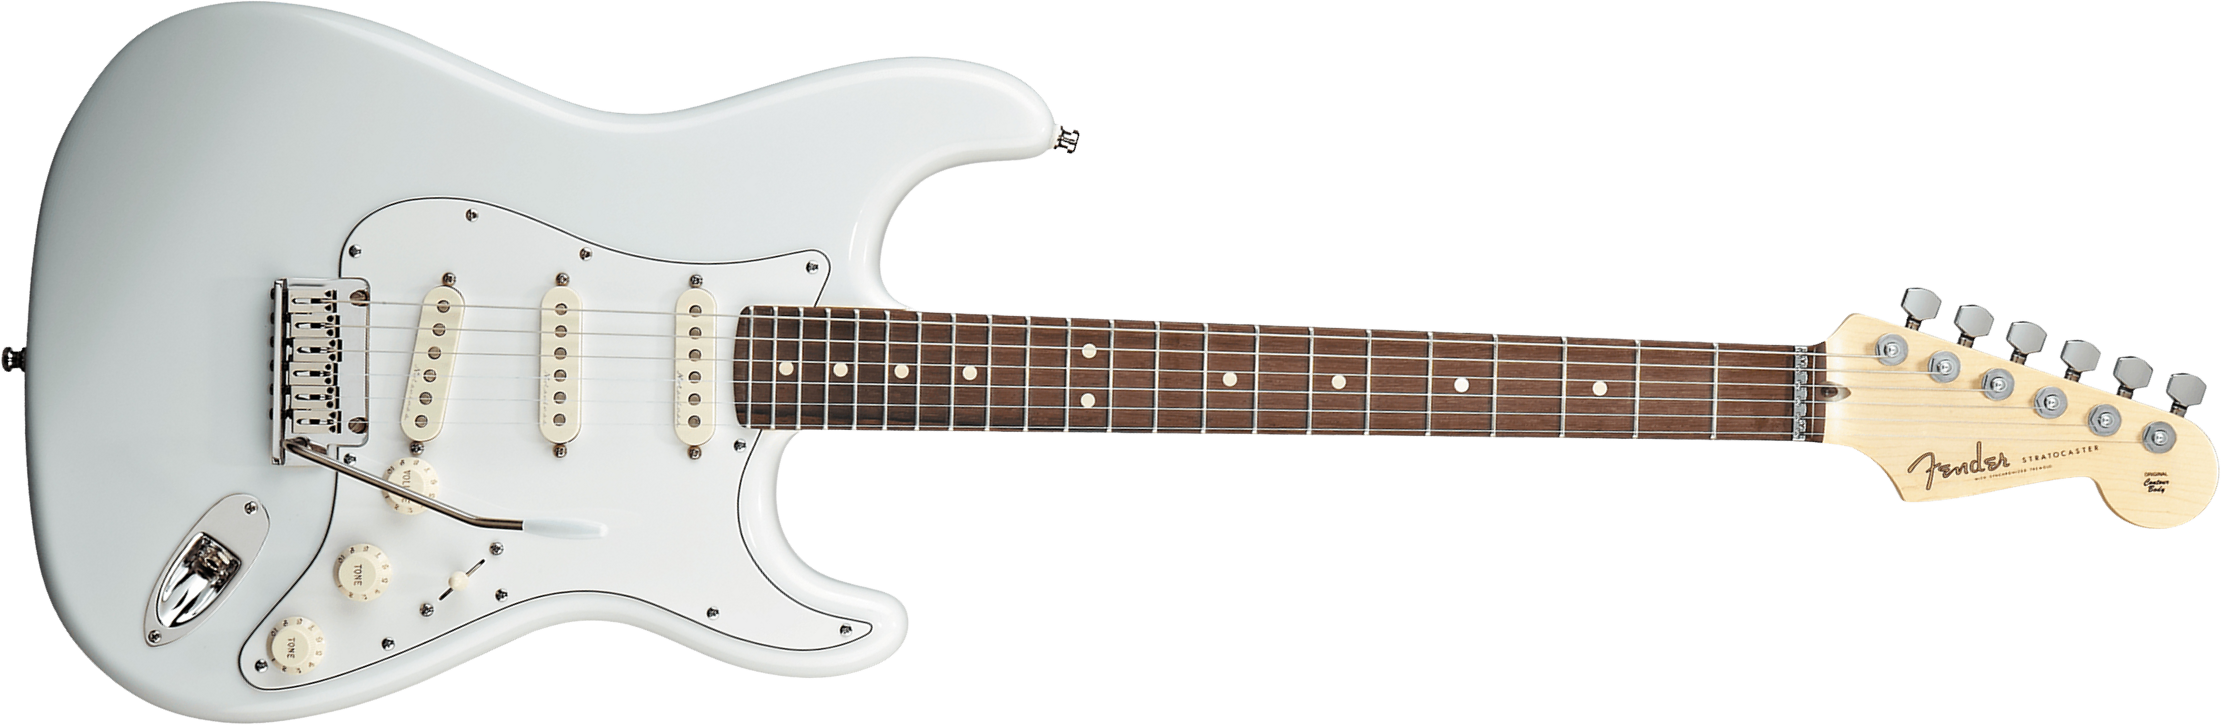 Fender Custom Shop Jeff Beck Strat 3s Trem Rw - Nos Olympic White - Elektrische gitaar in Str-vorm - Main picture